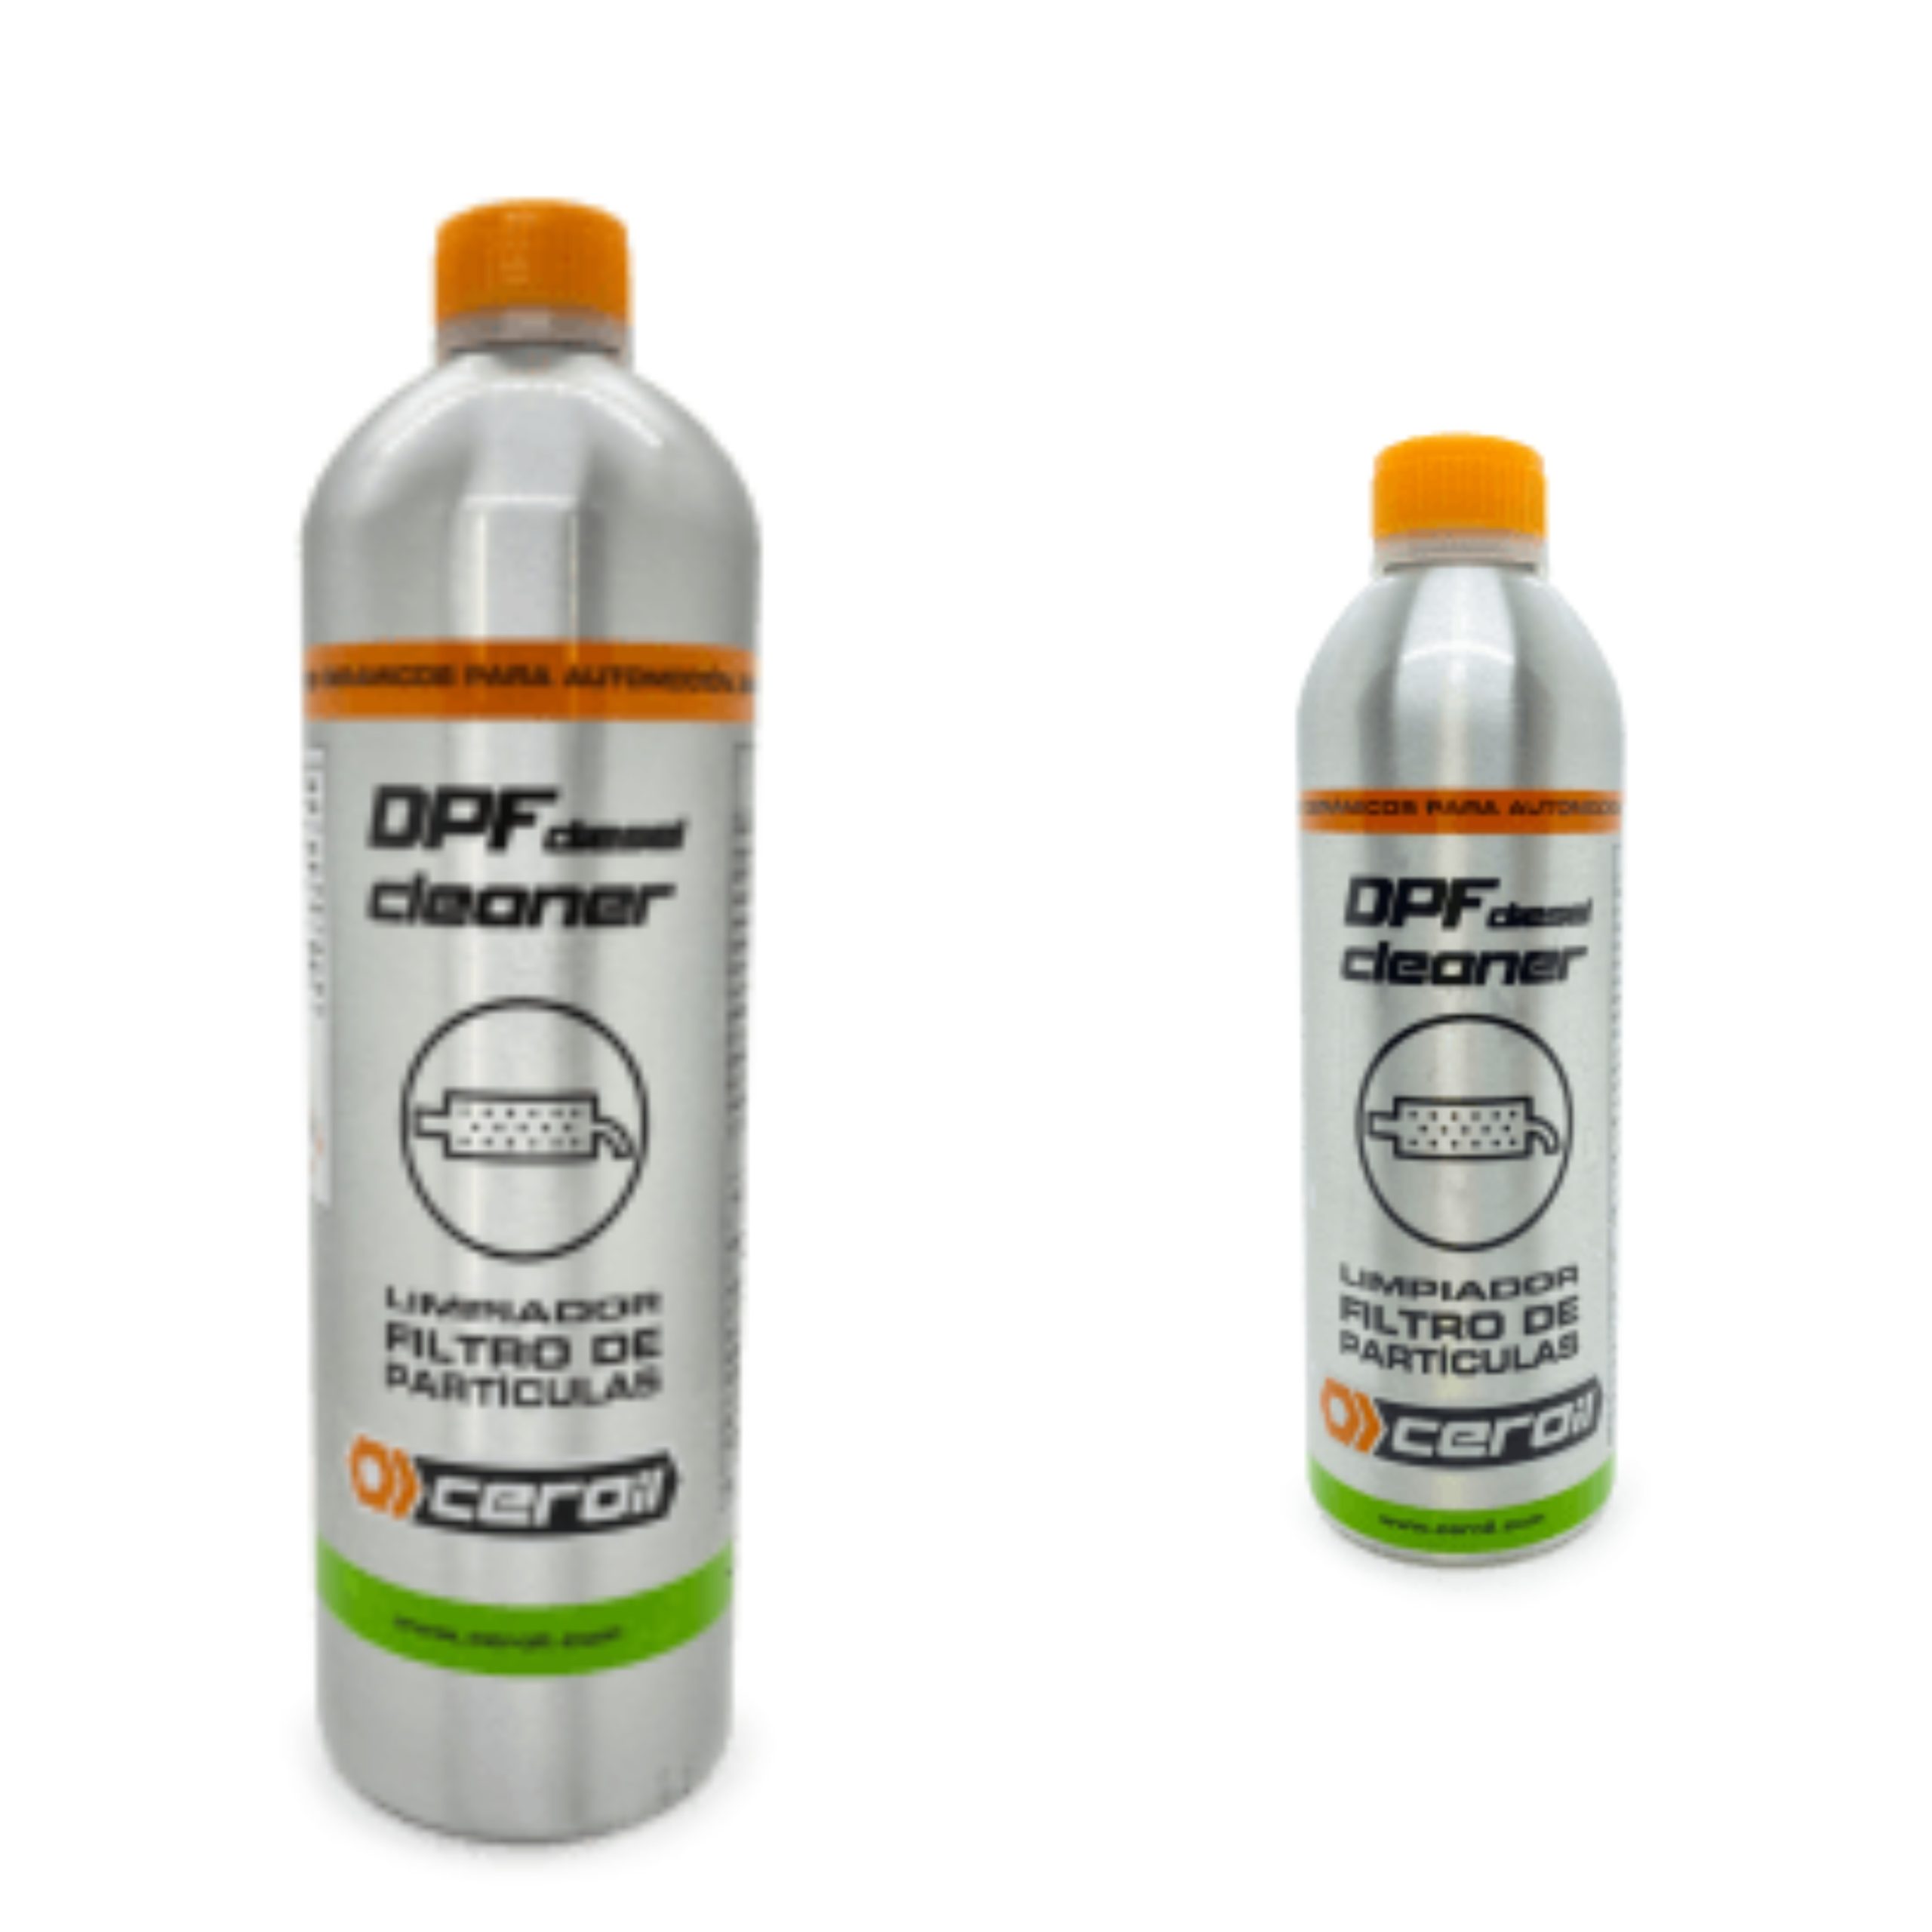 Limpiador de filtro de partículas Diesel (DPF)